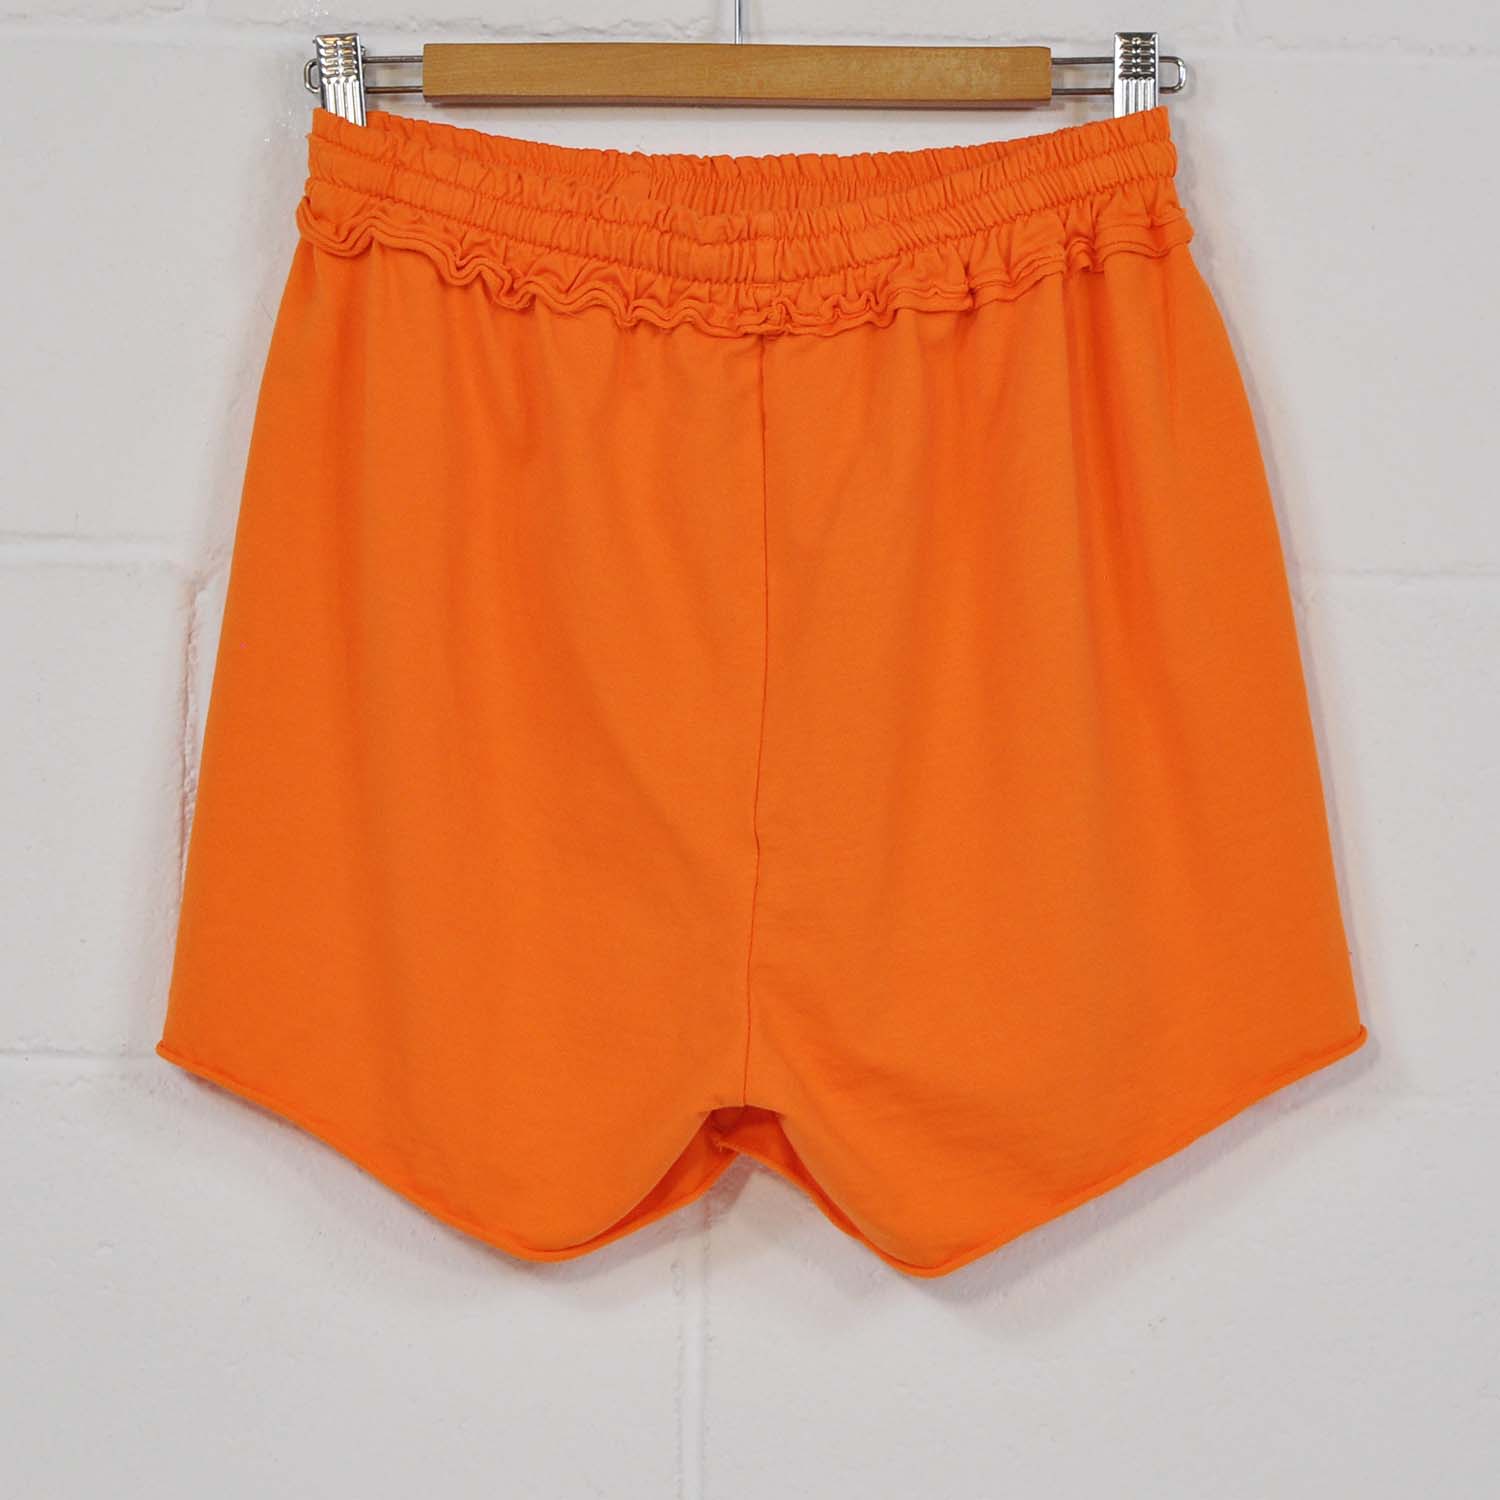 Orange pocket shorts